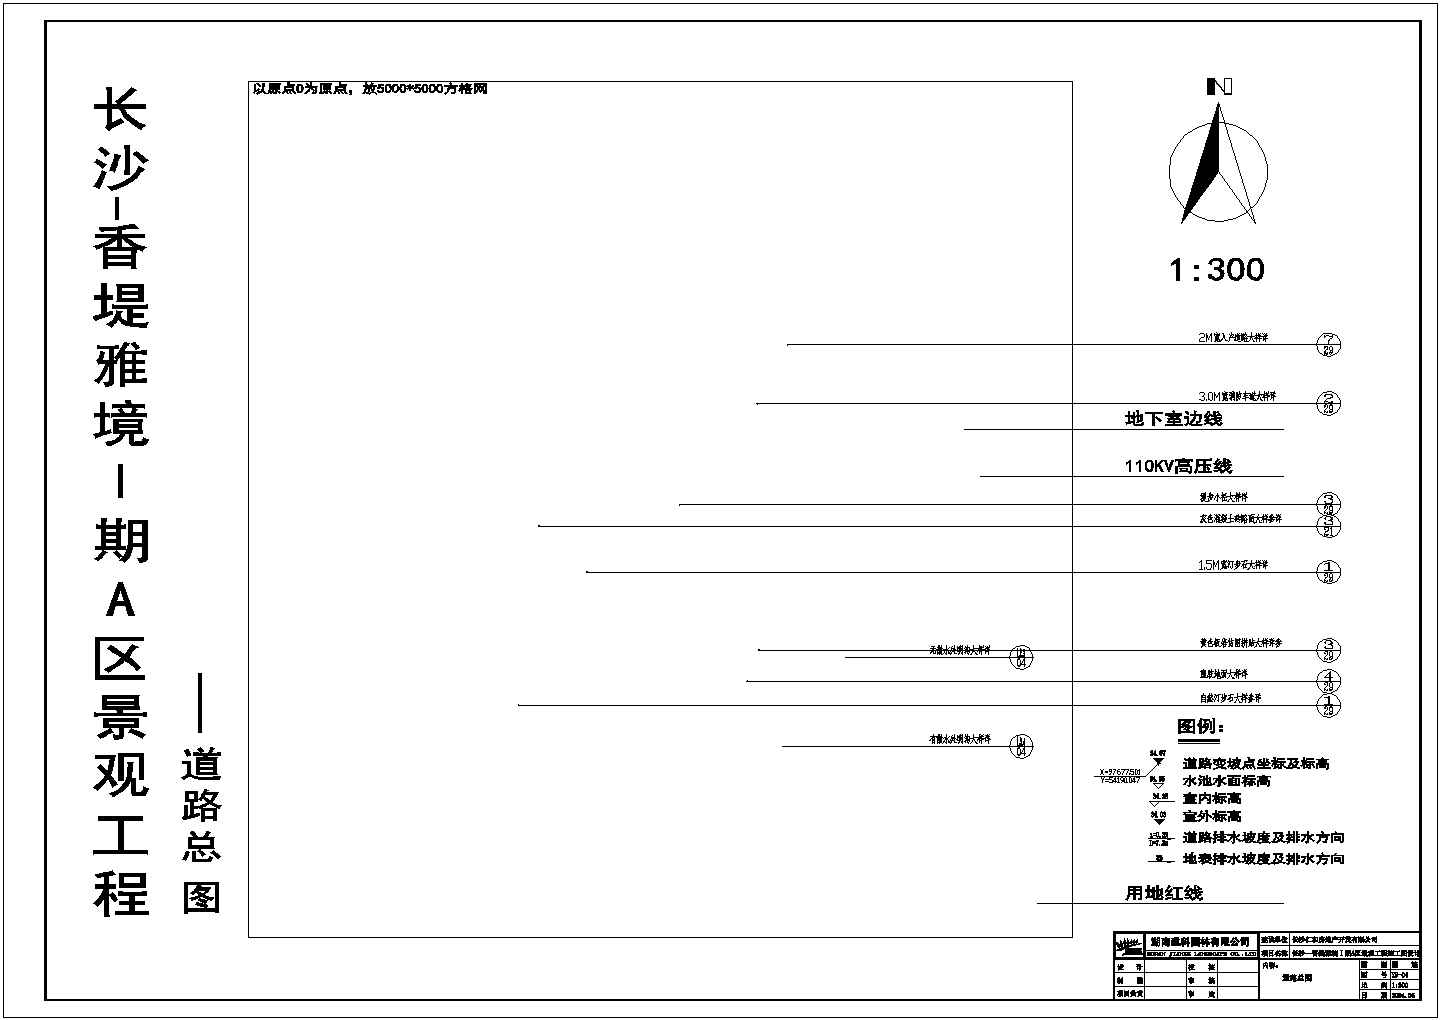 香堤雅境Ⅰ期A区景观工程施工图设计竖向图